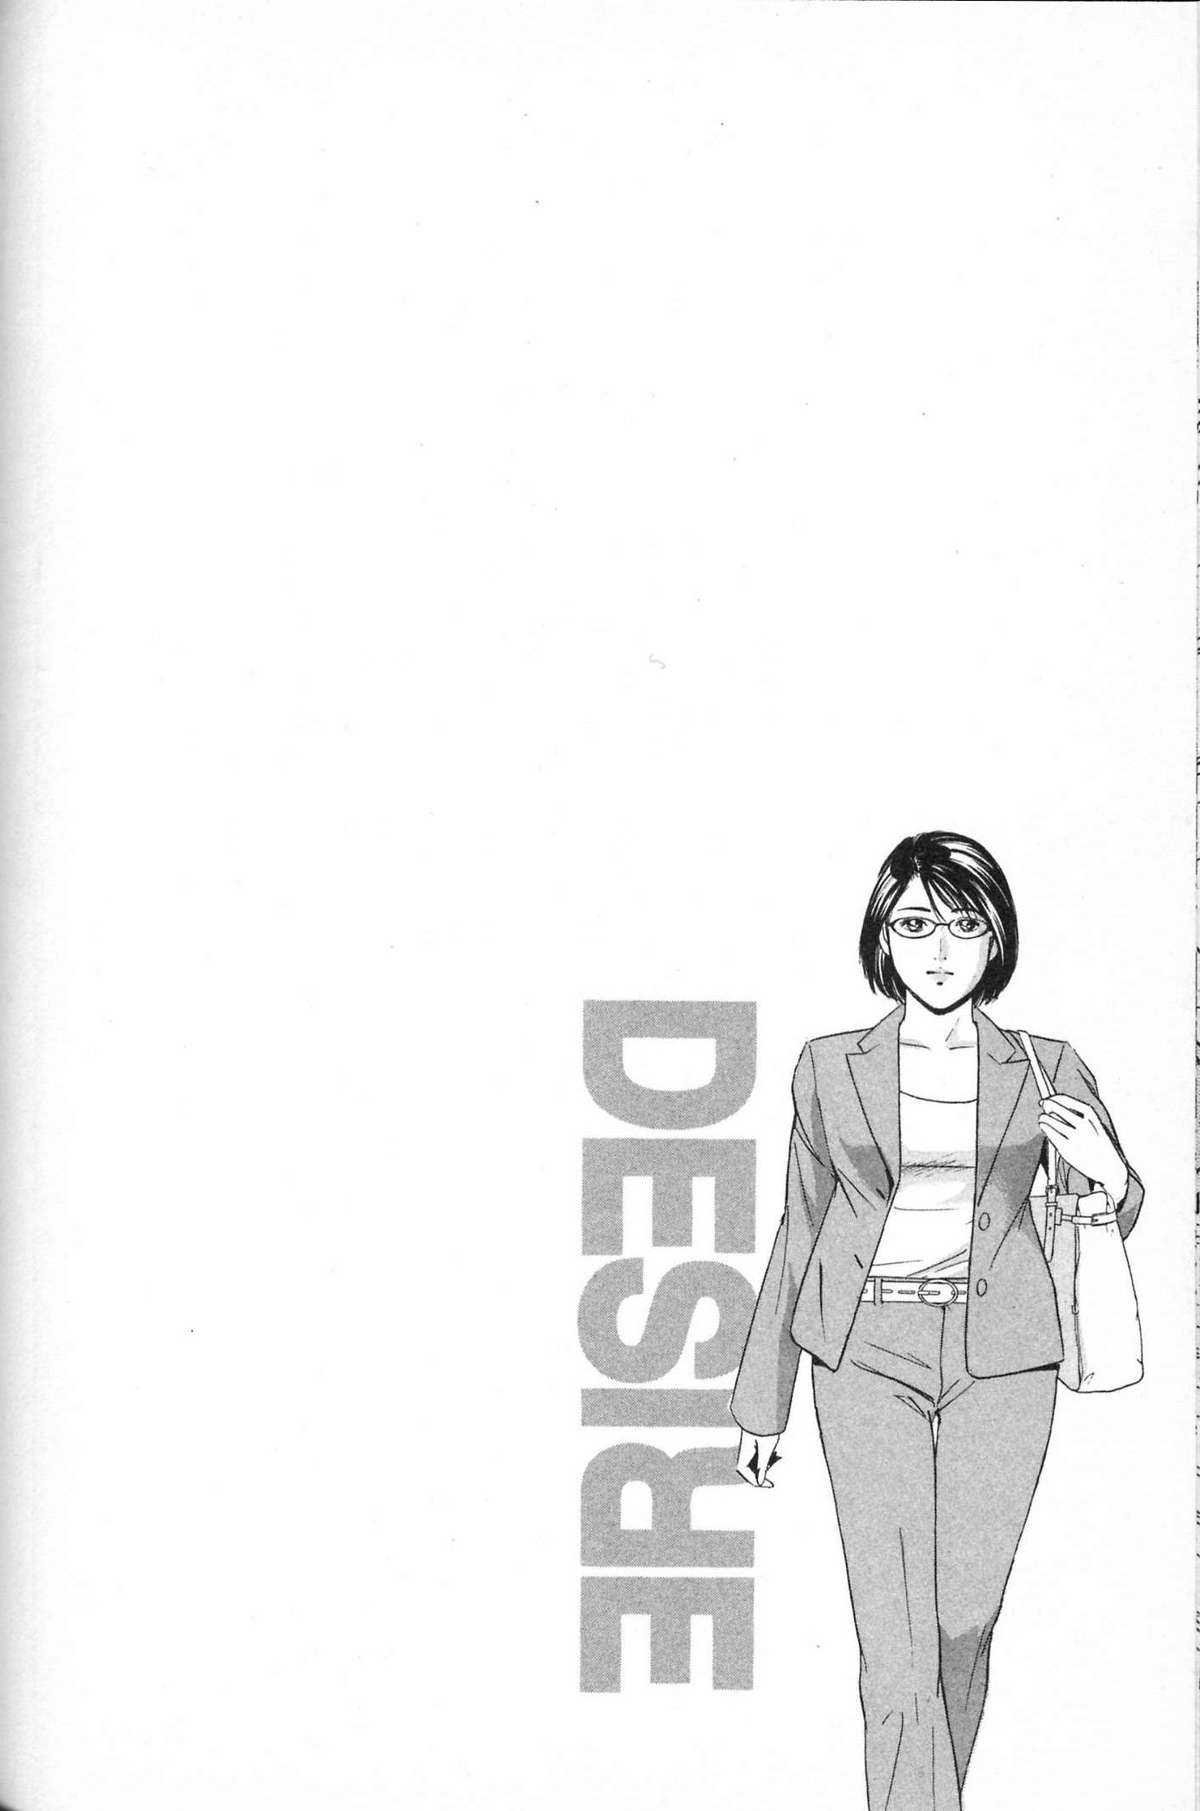 Desire 22 (J) 